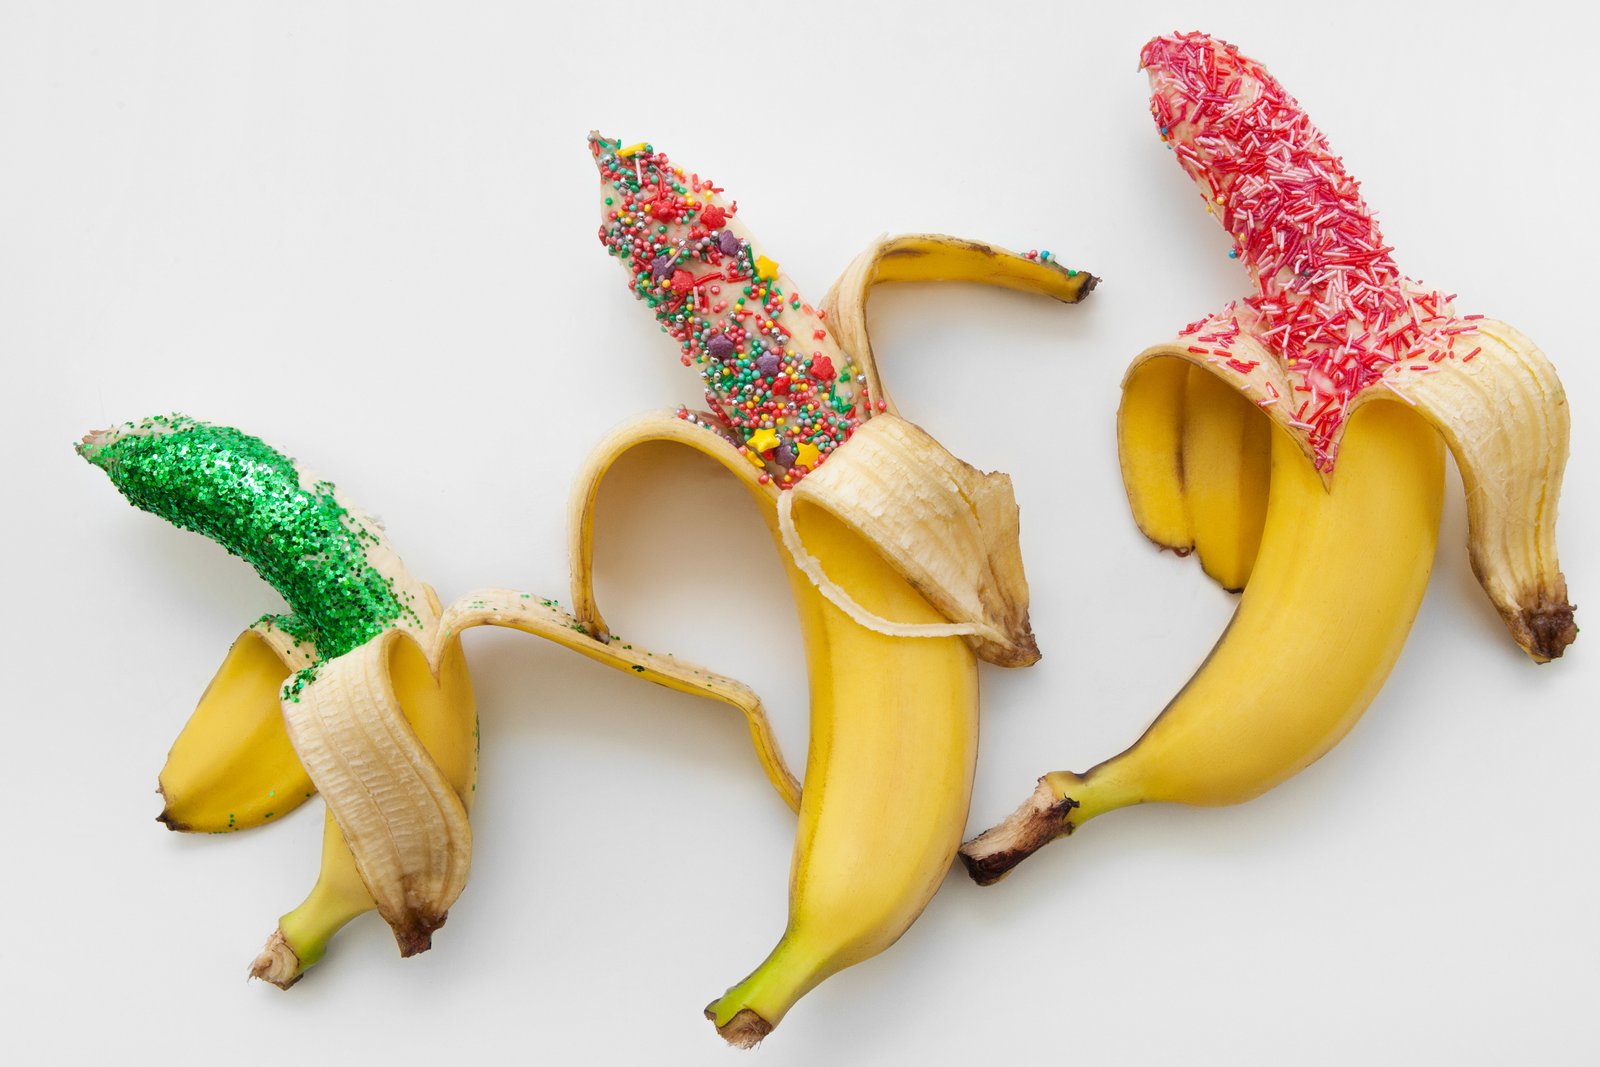 Los plátanos como símbolo de los diferentes tamaños de pene